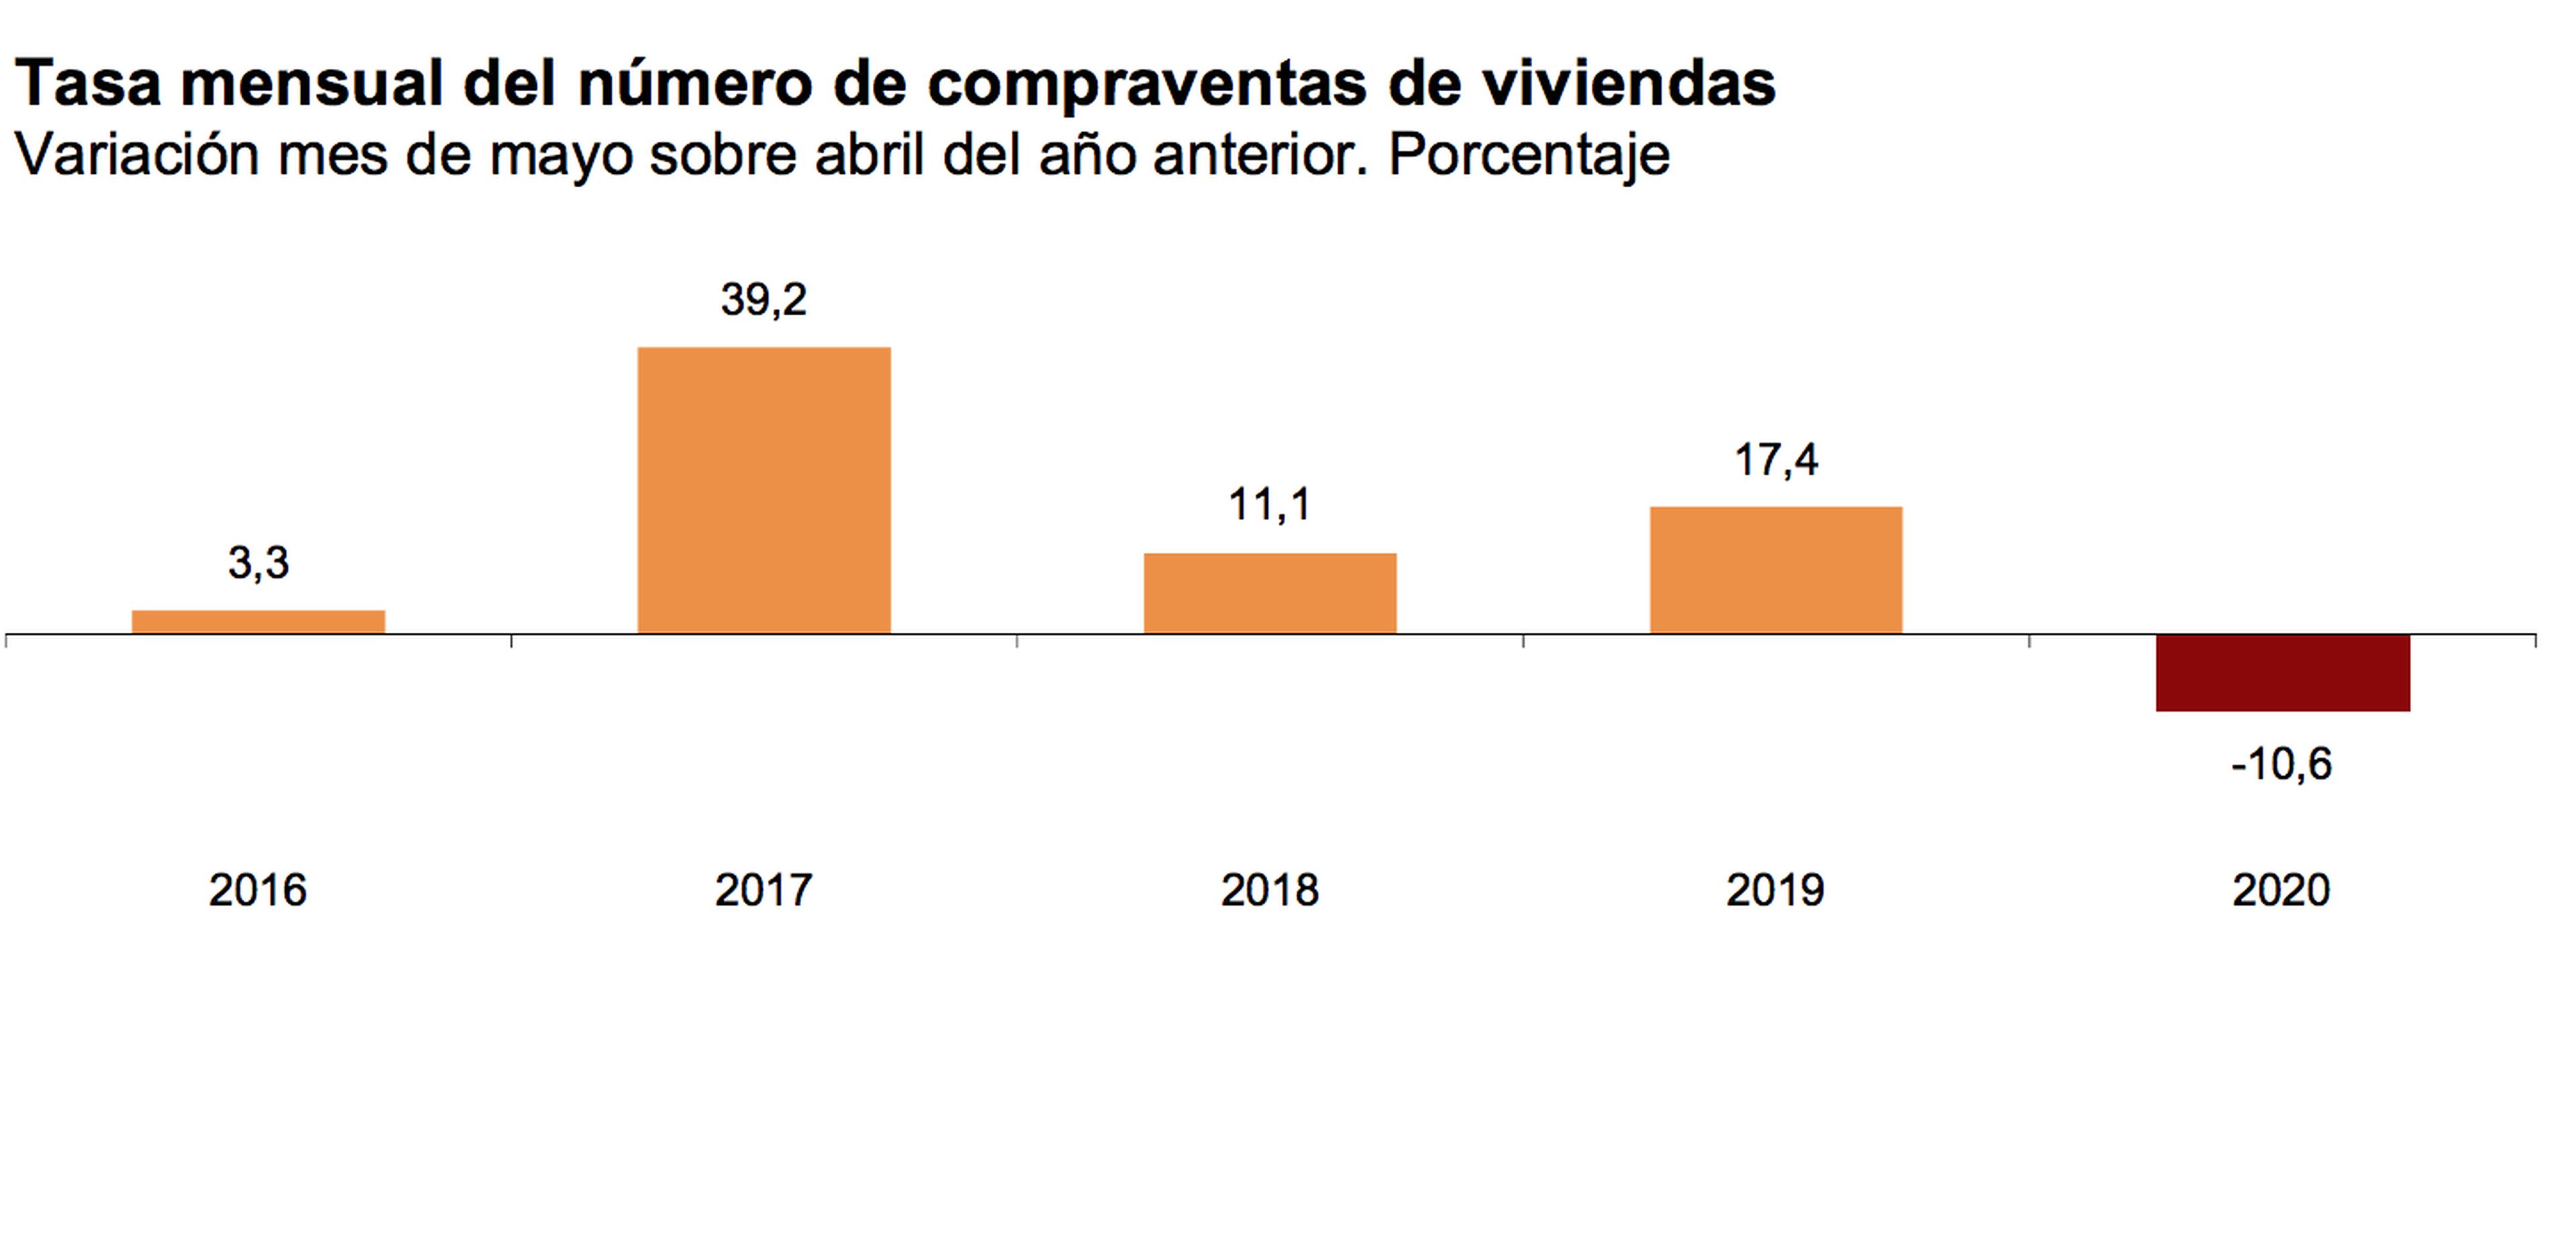 Evolución de la tasa mensual de compraventa de viviendas, según el INE